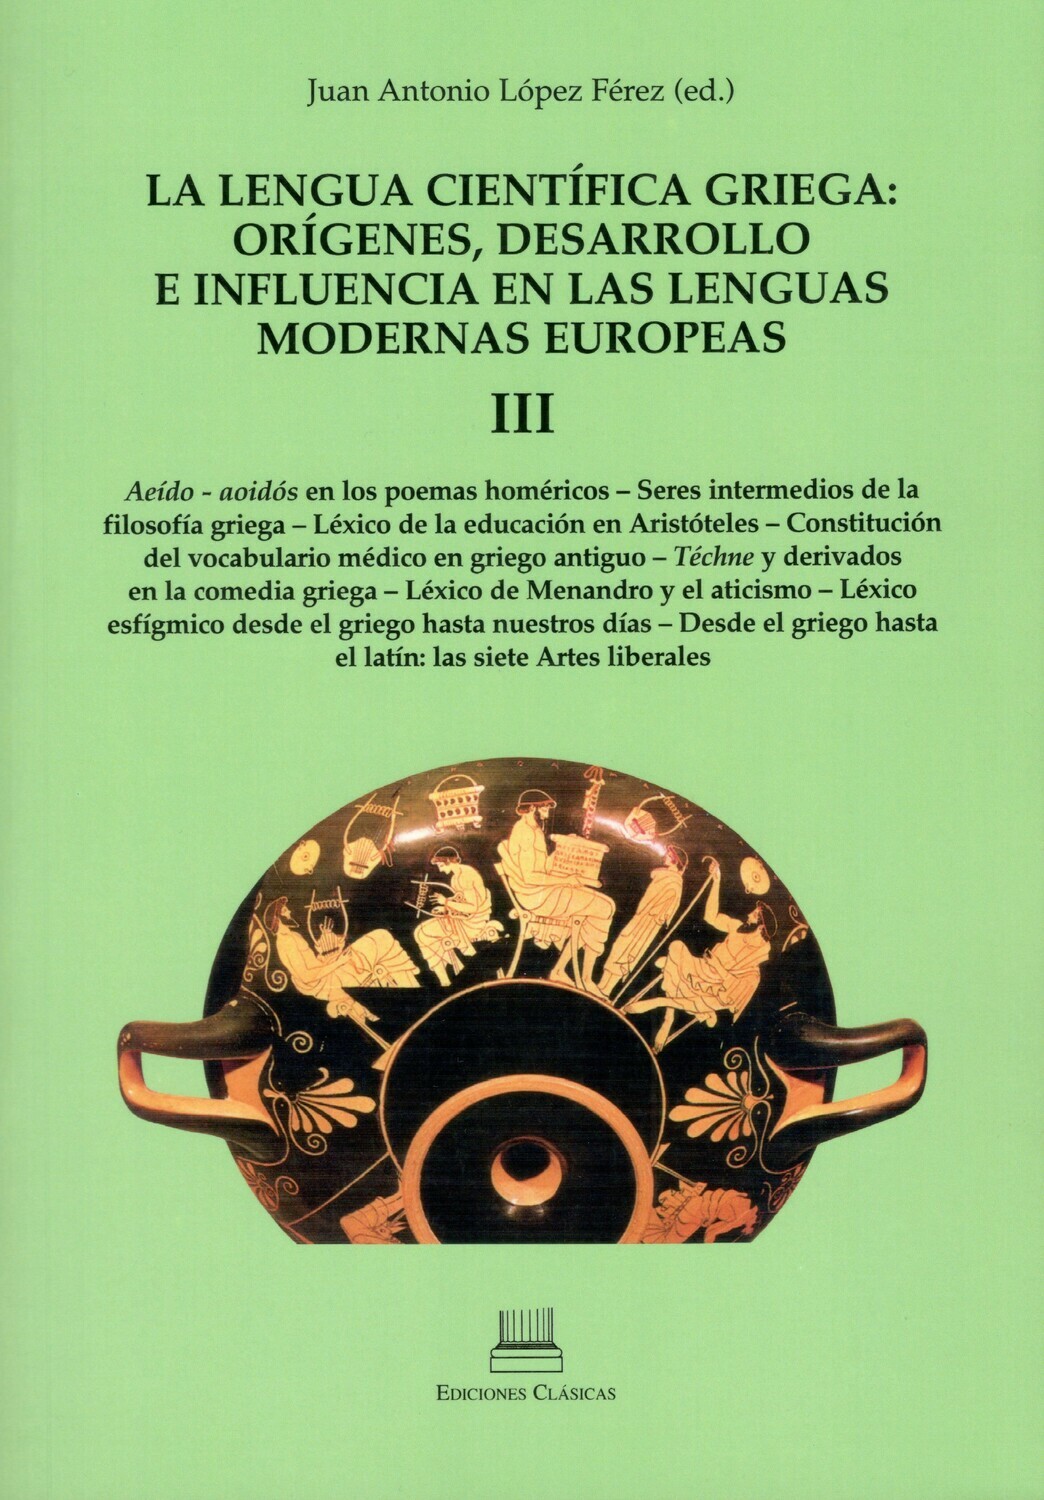 Imagen de portada del libro La lengua científica griega ( III)